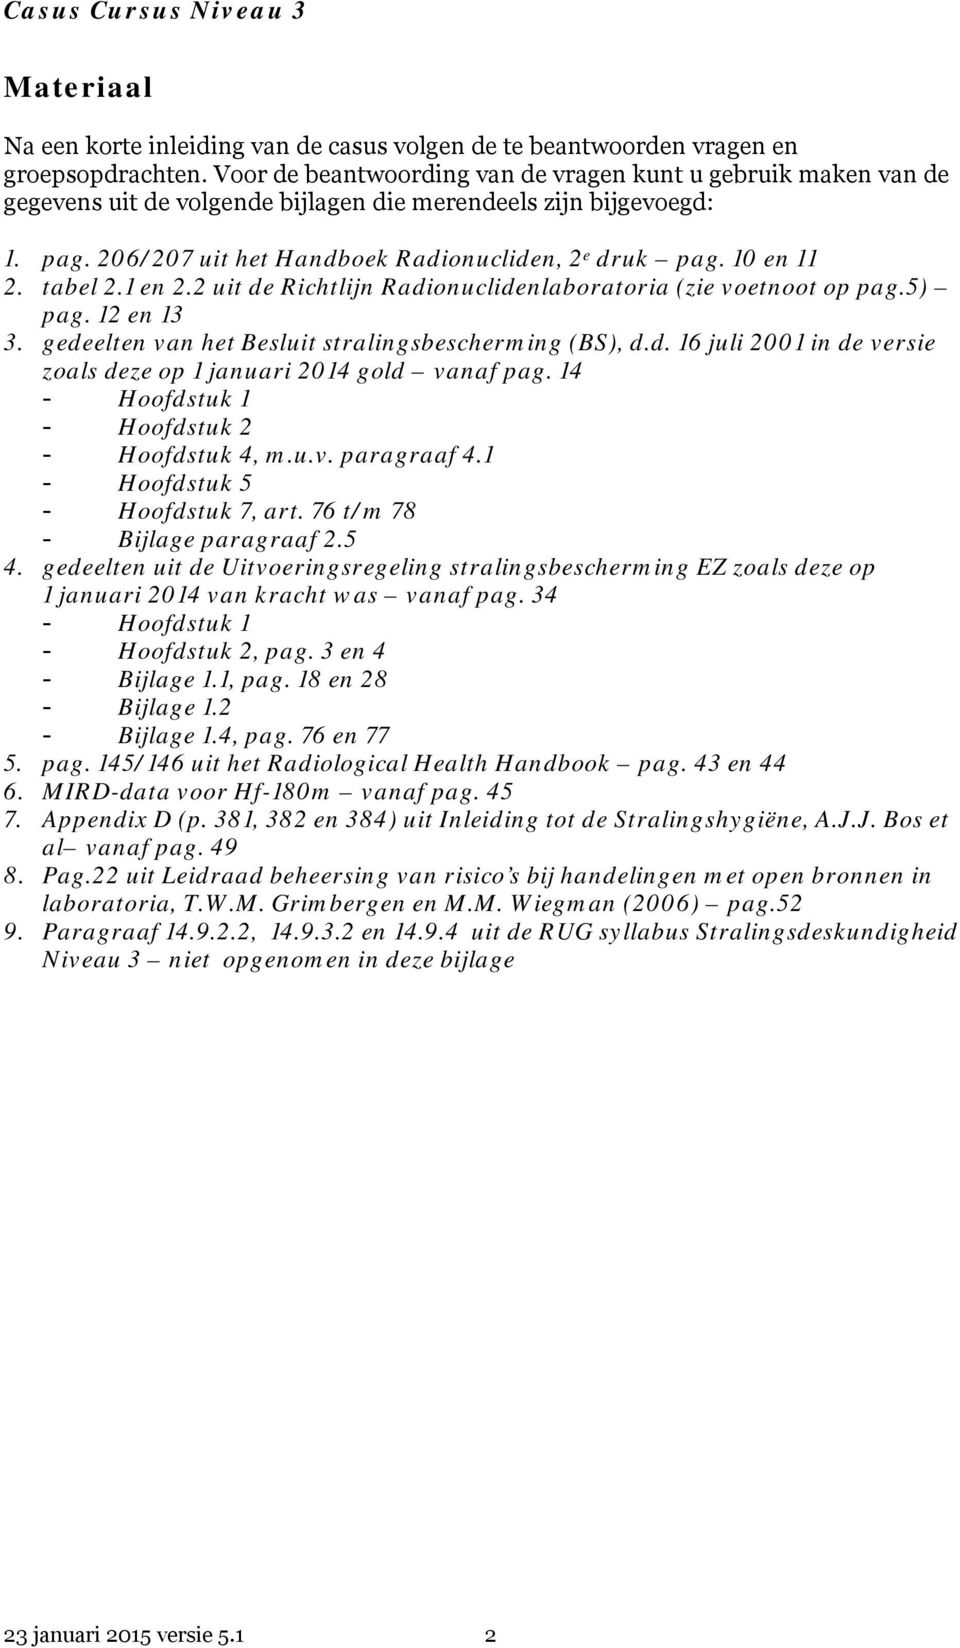 10 en 11 2. tabel 2.1 en 2.2 uit de Richtlijn Radionuclidenlaboratoria (zie voetnoot op pag.5) pag. 12 en 13 3. gedeelten van het Besluit stralingsbescherming (BS), d.d. 16 juli 2001 in de versie zoals deze op 1 januari 2014 gold vanaf pag.